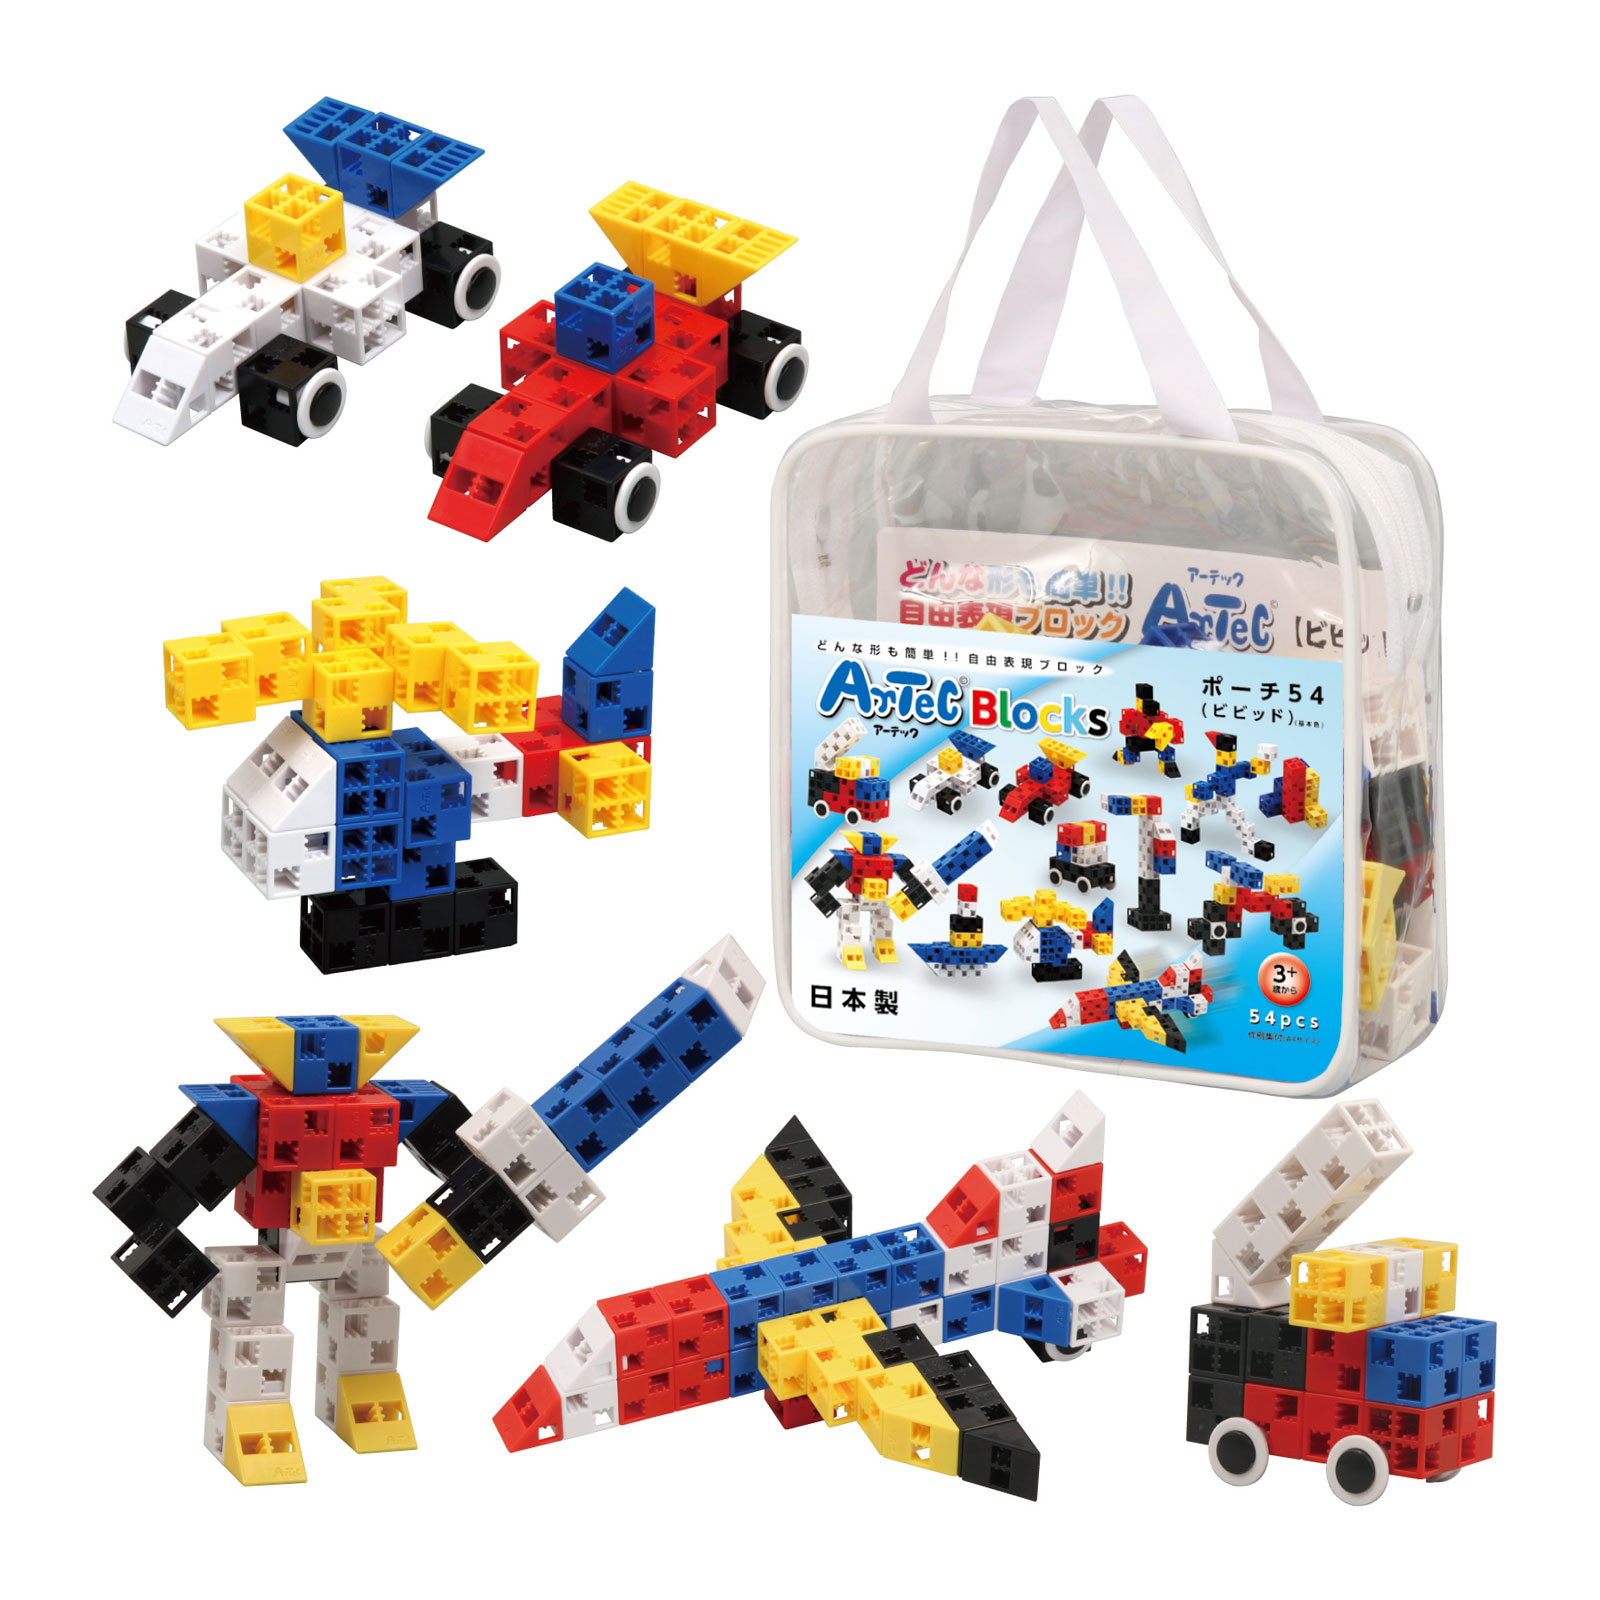 ブロック おもちゃ アーテックブロック ポーチ54 Artec 日本製 ブロック 日本製 玩具 レゴ レゴブロックのように自由に遊べます 室内